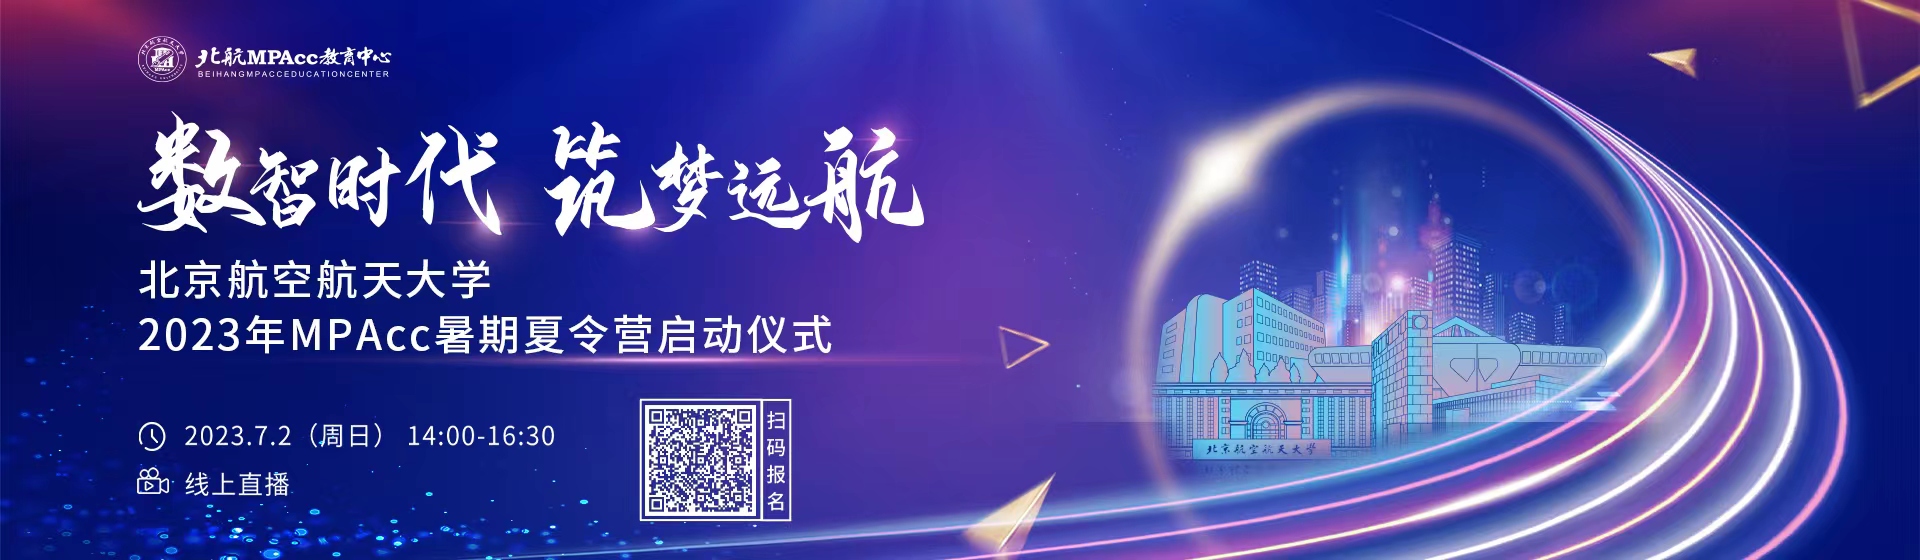 北京航空航天大学2023年MPACc暑期夏令营启动仪式